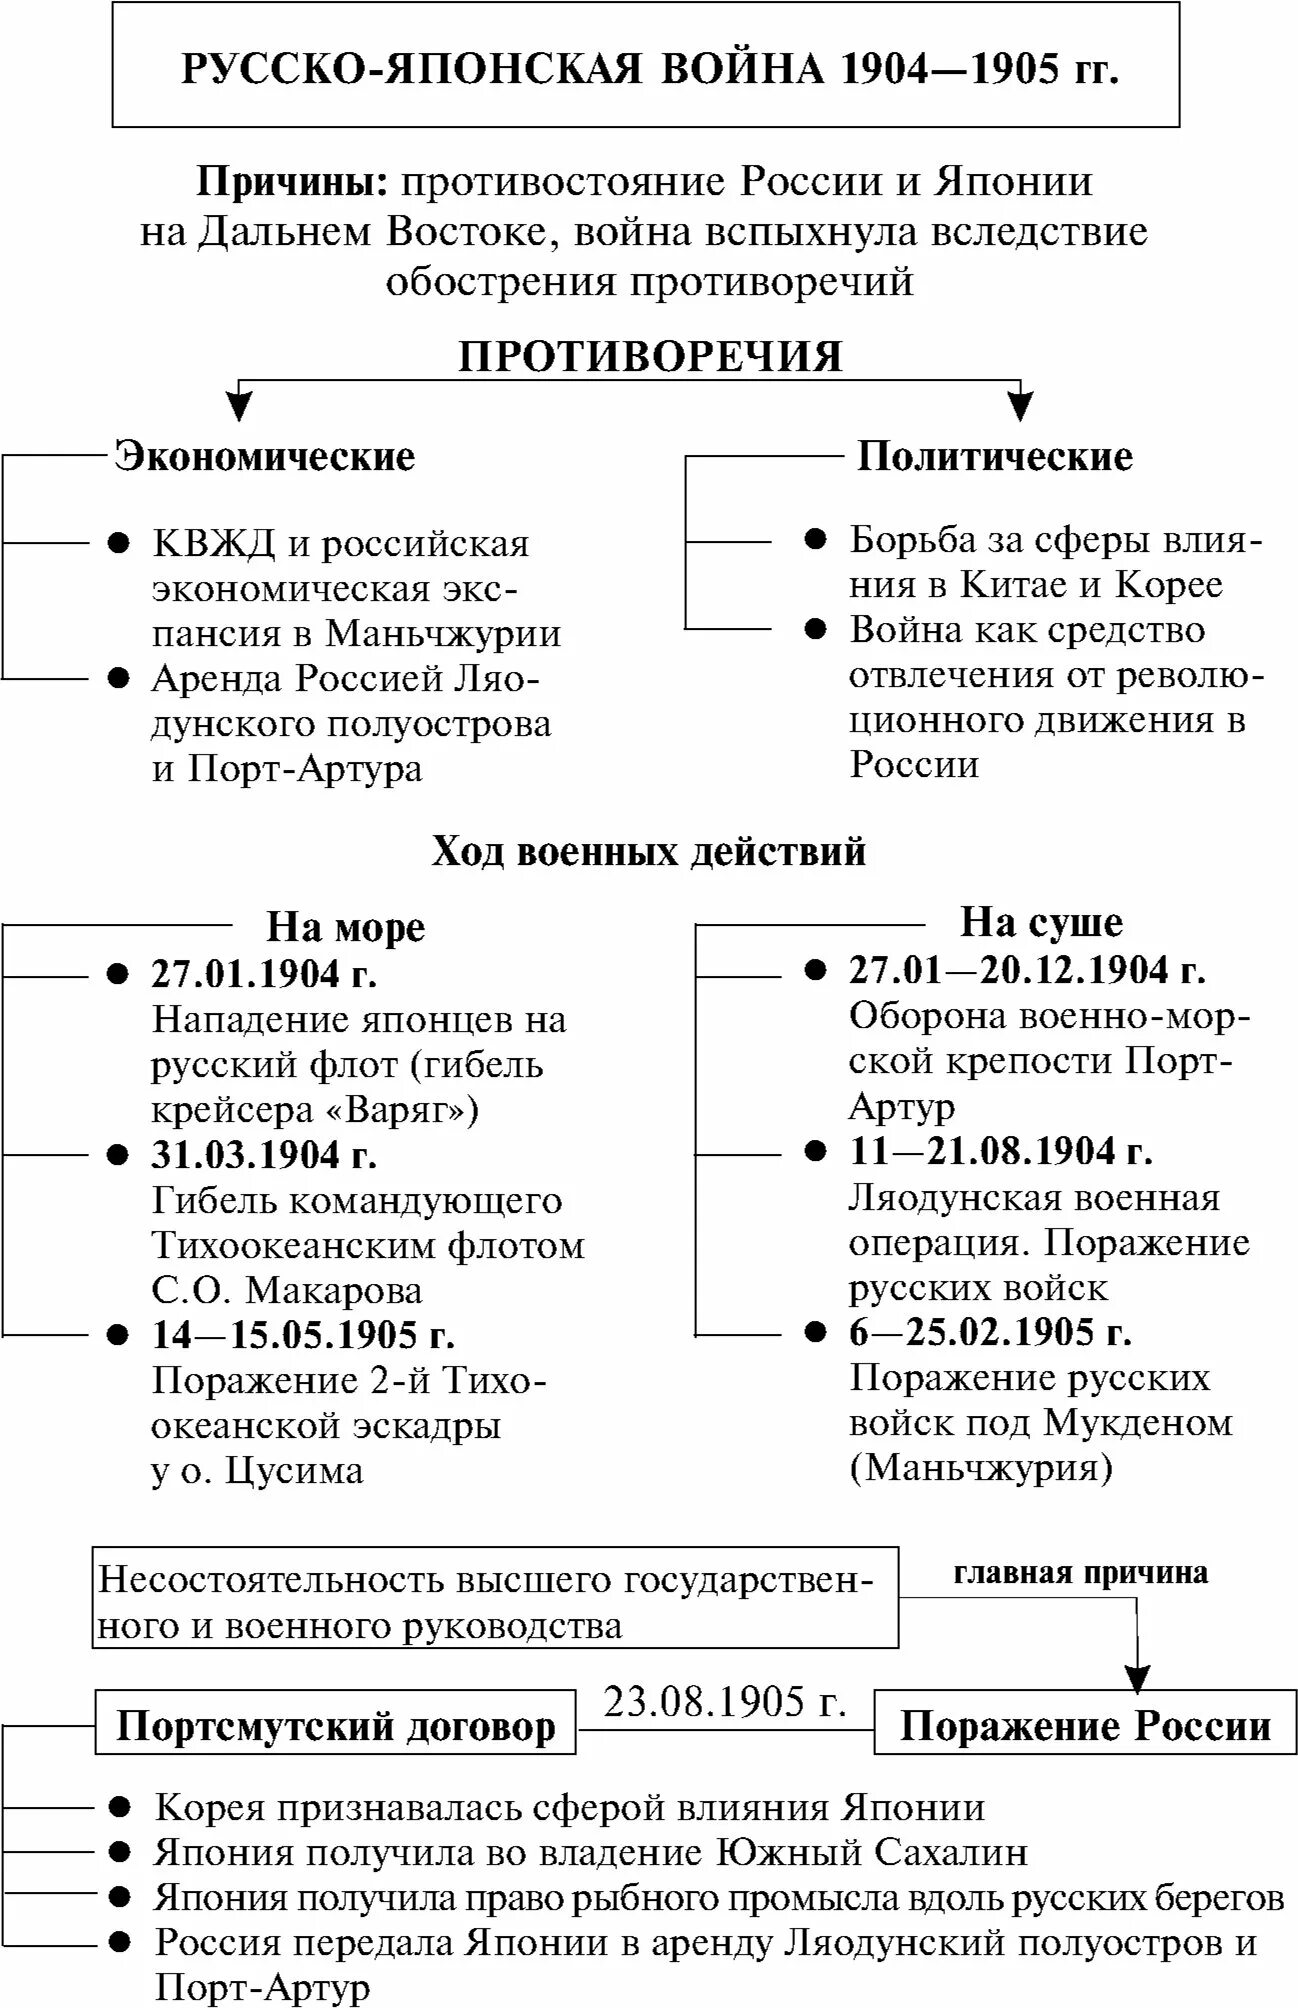 Ход событий русско-японской войны 1904-1905. Итоги русско-японской войны 1904-1905 таблица.